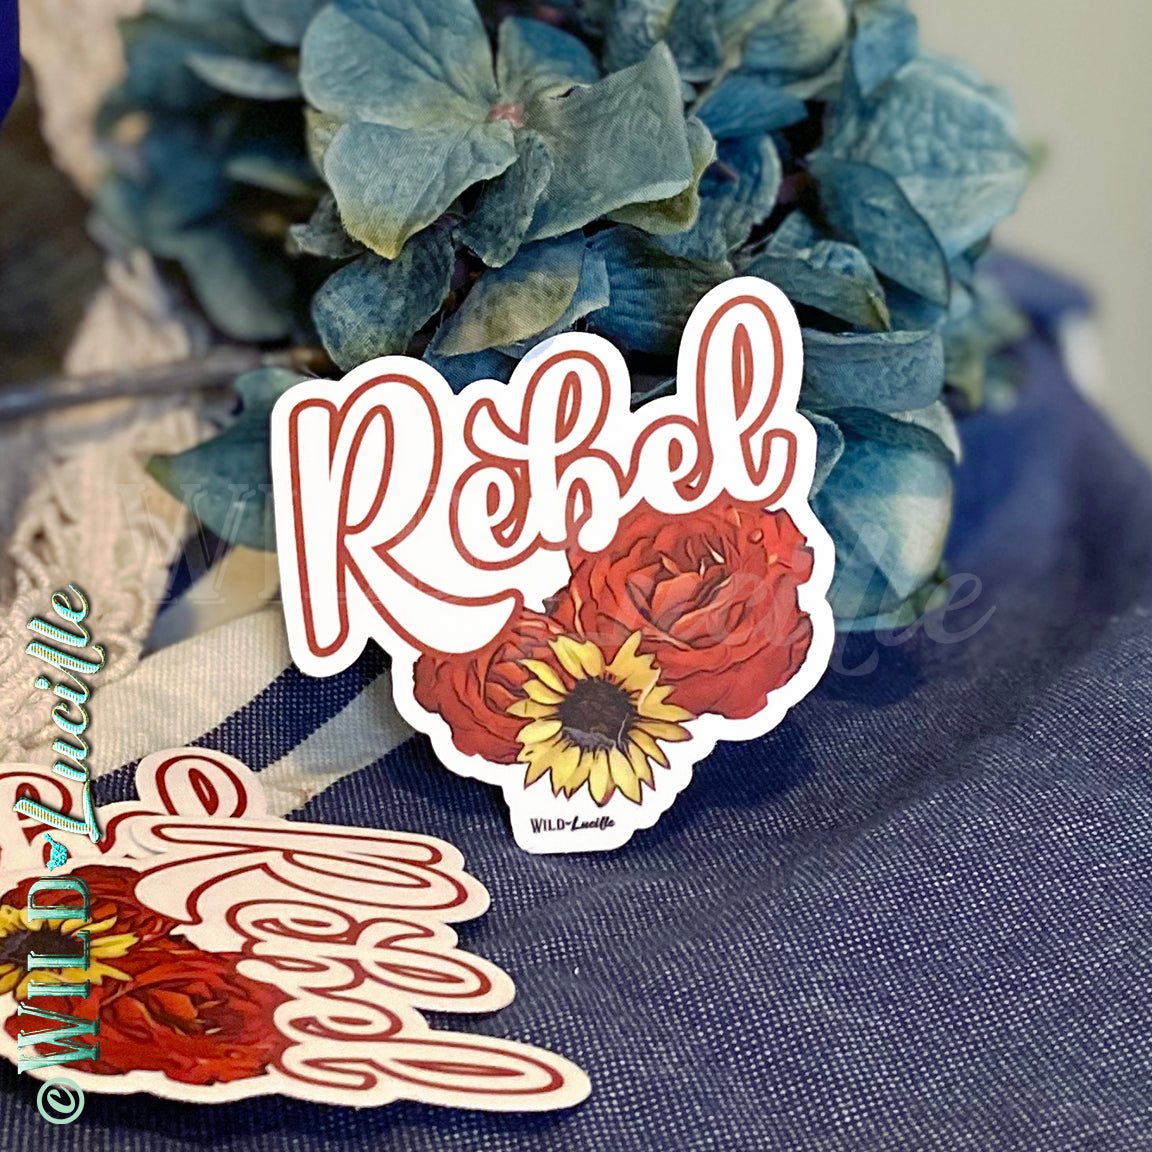 Rebel Rose - Boho Western Vinyl Sticker Decals